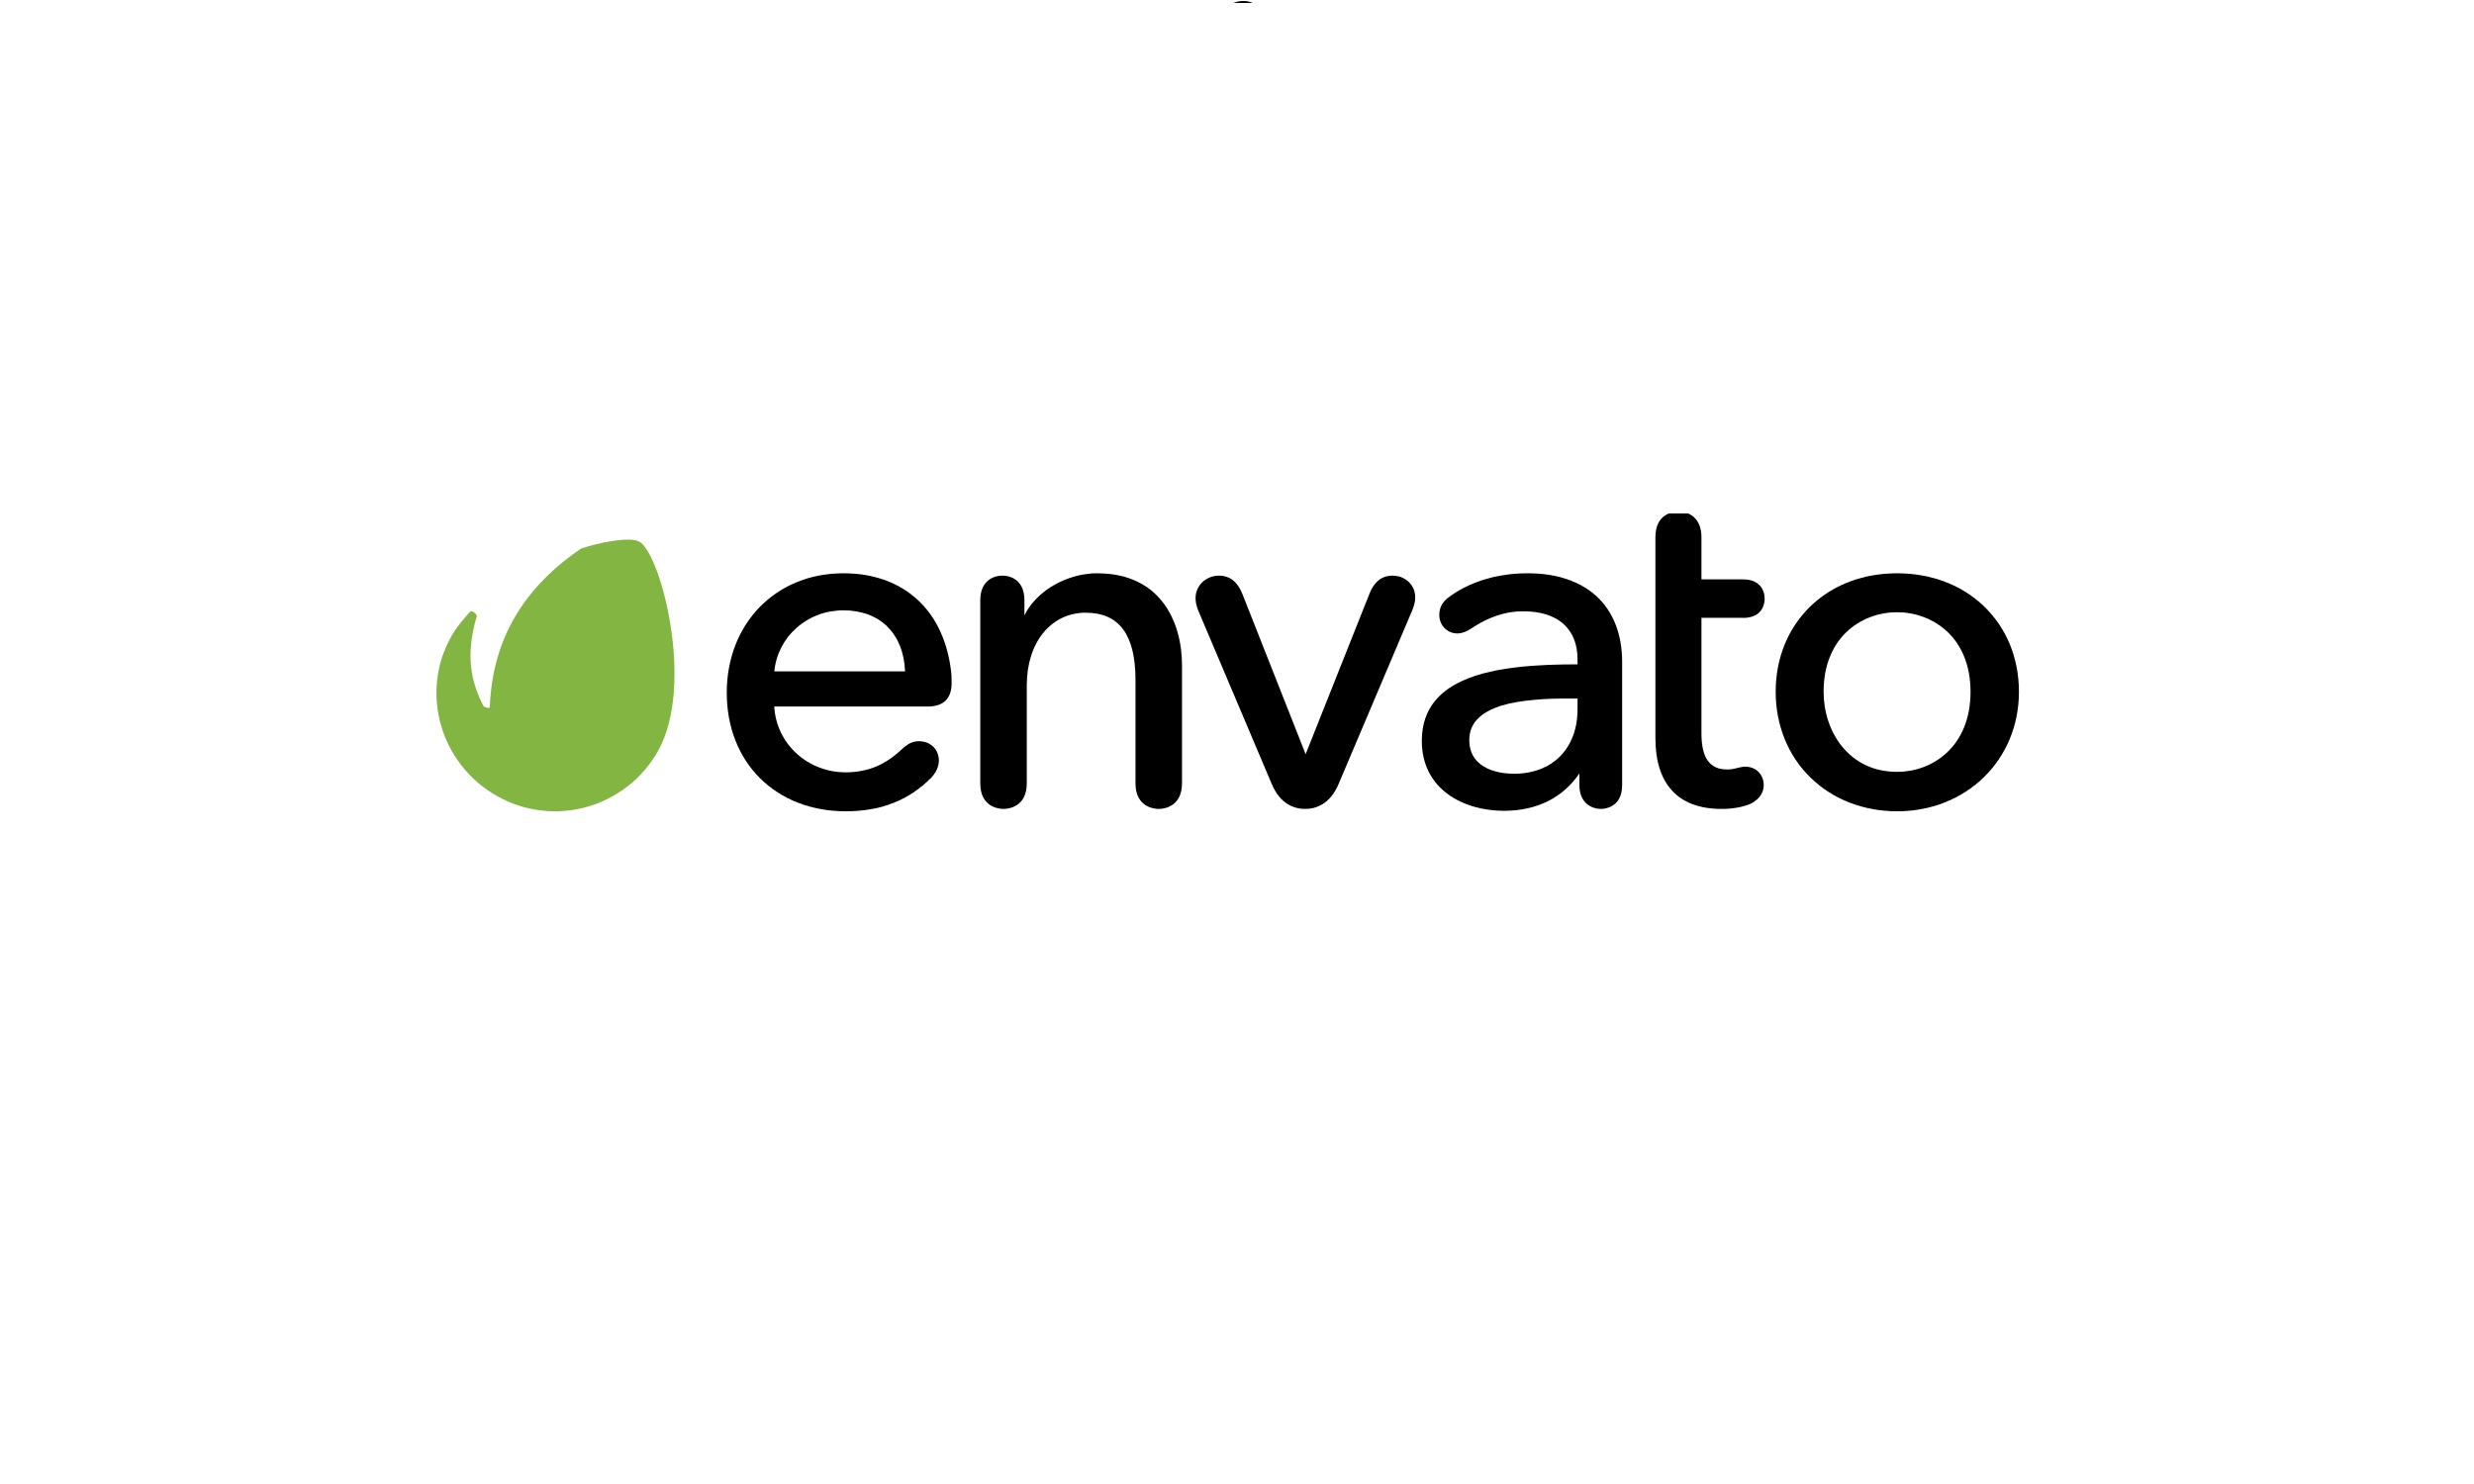 Envato Market Review